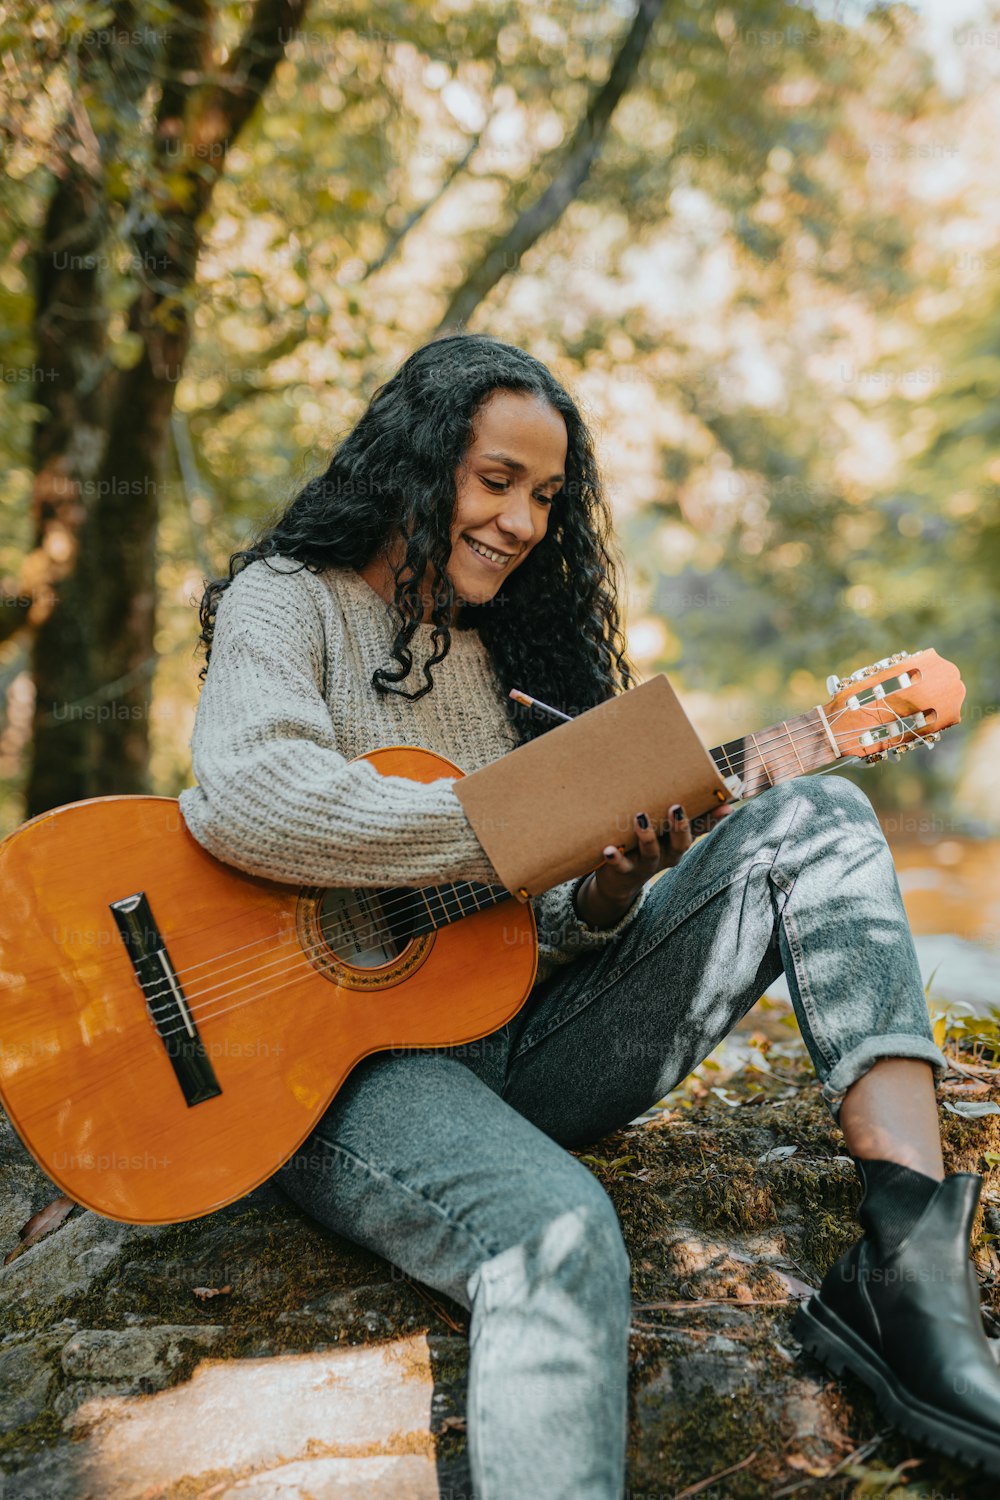 바위 위에 앉아 기타를 연주하는 여자